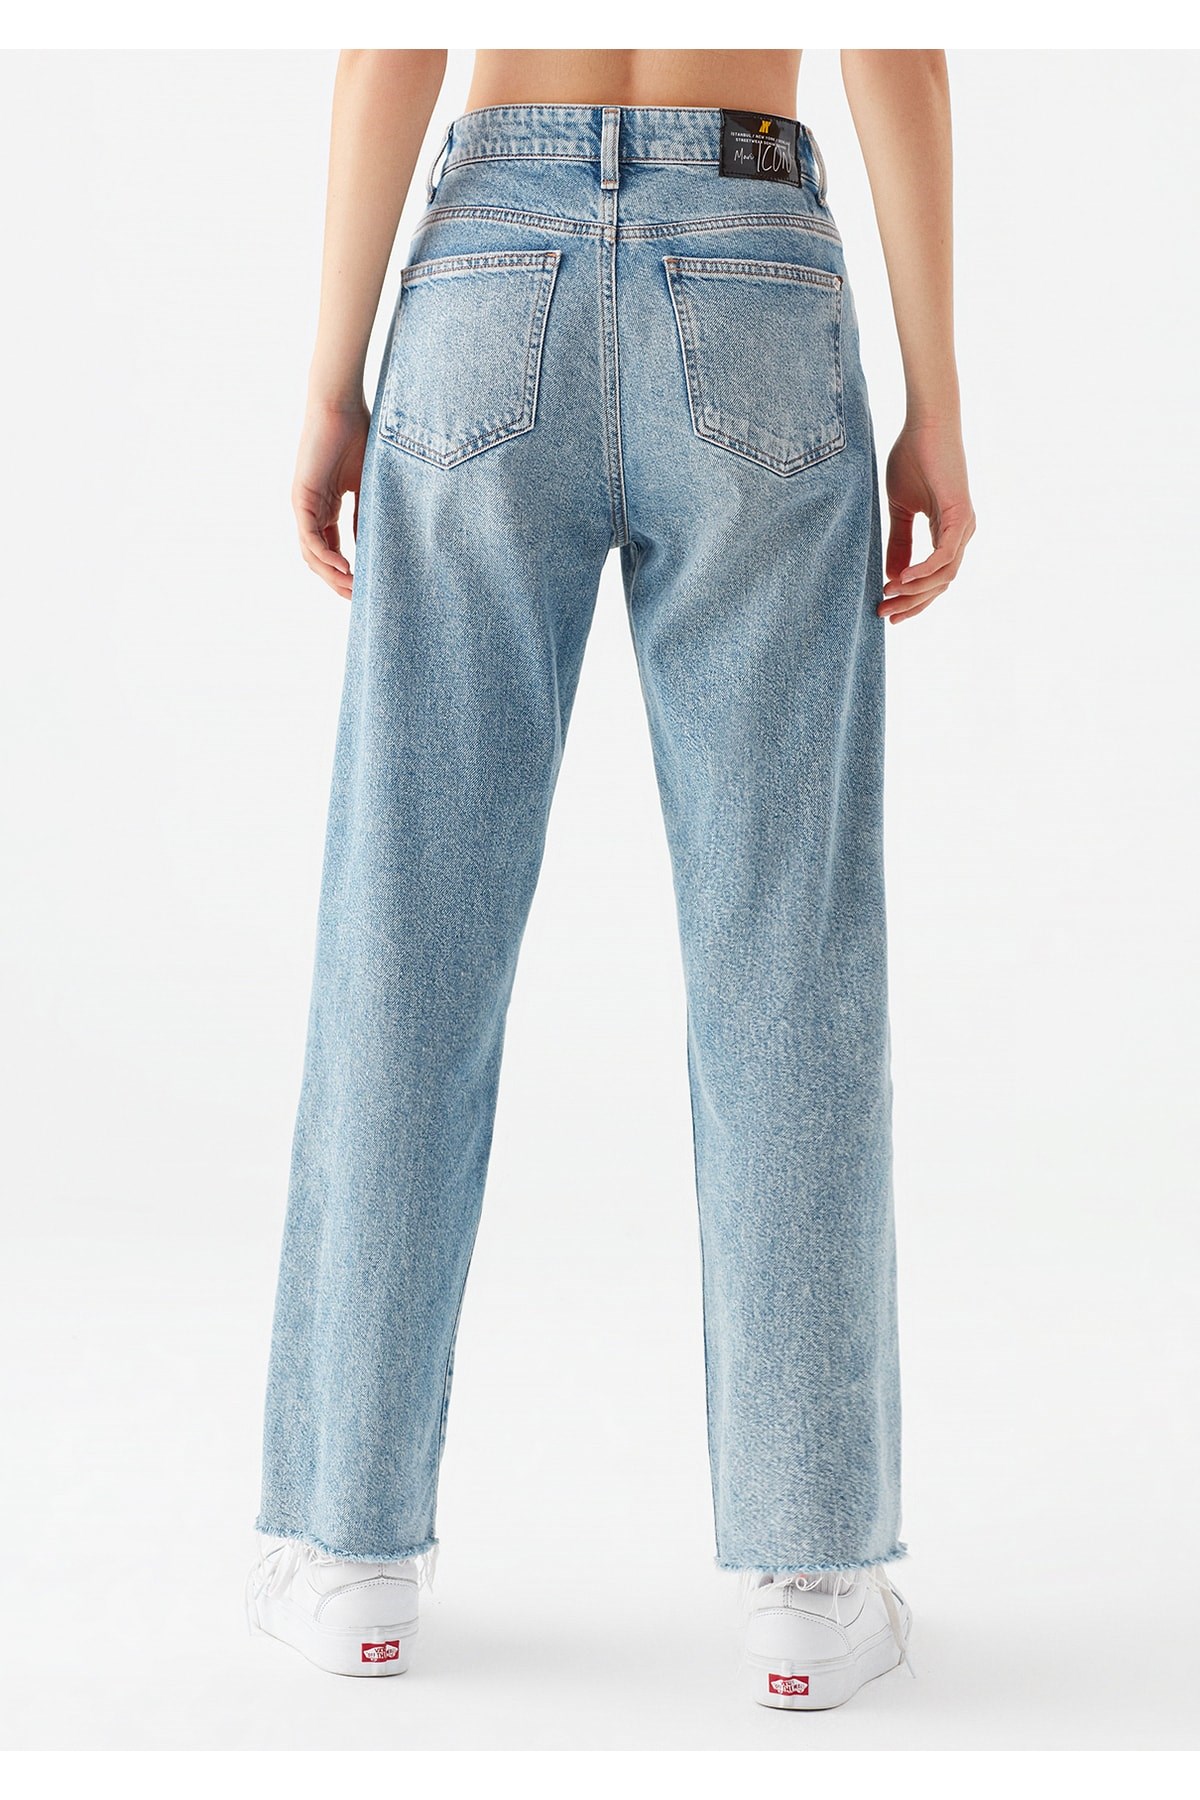 Mavi Jeans Kadın Pantolon 101047-32260 